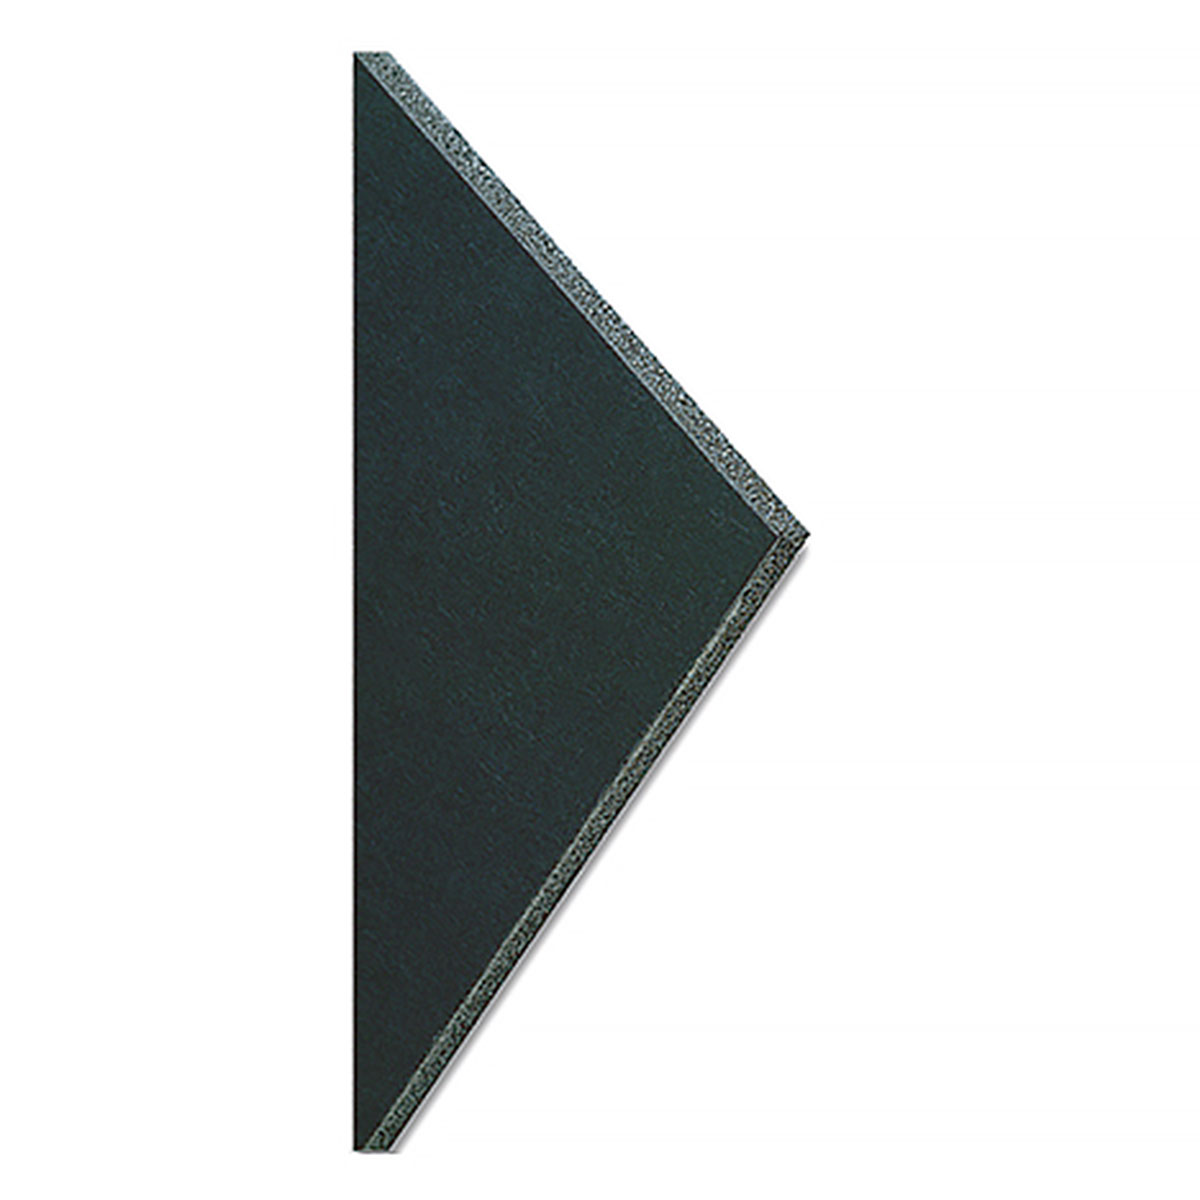 Pro Foam Board - Black, 20 x 30 x 1/2, 10 Pack